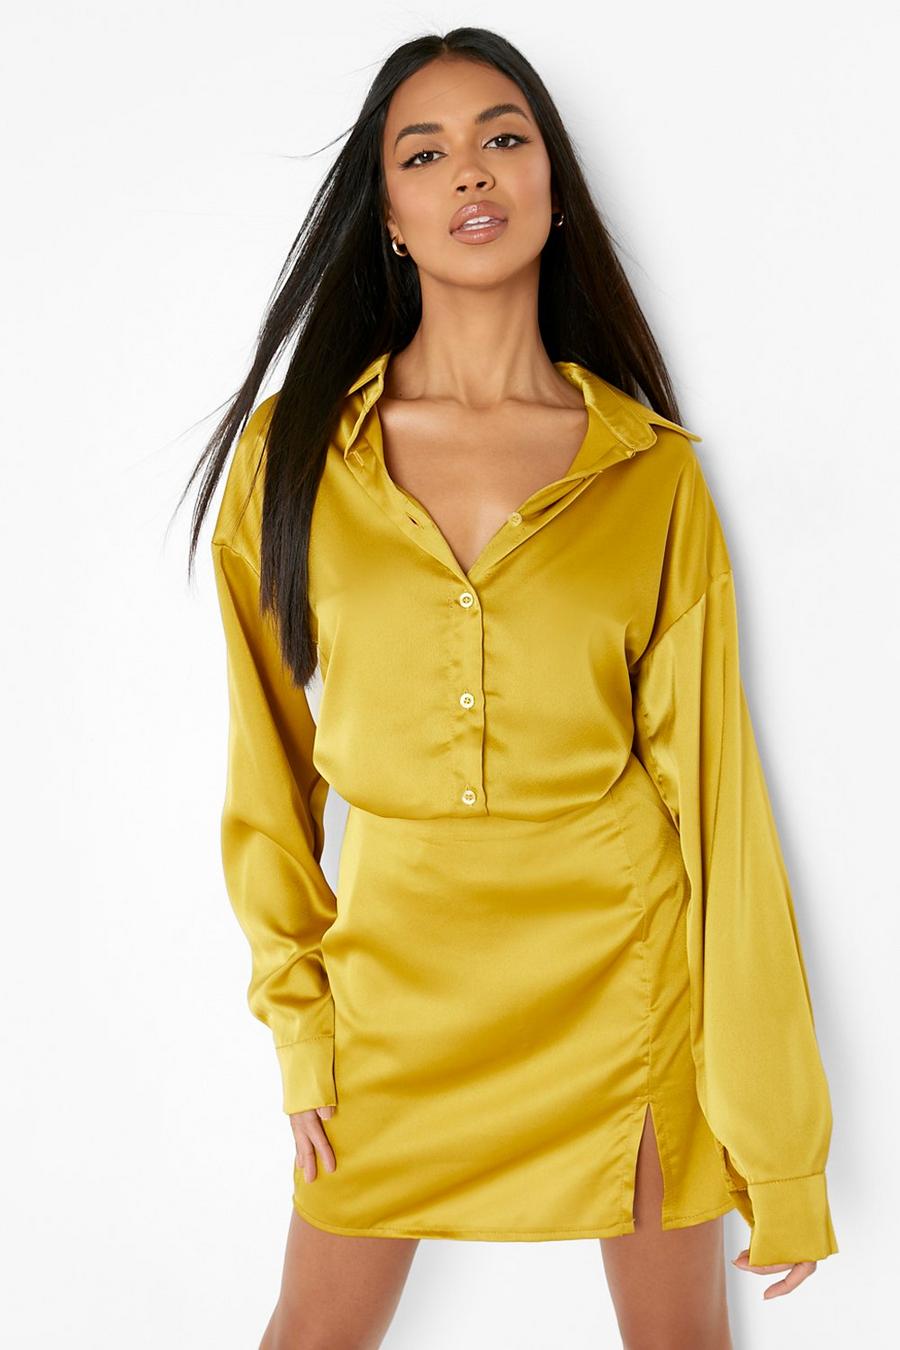 ירקרק giallo חצאית סאטן מיני עם שסע קדמי